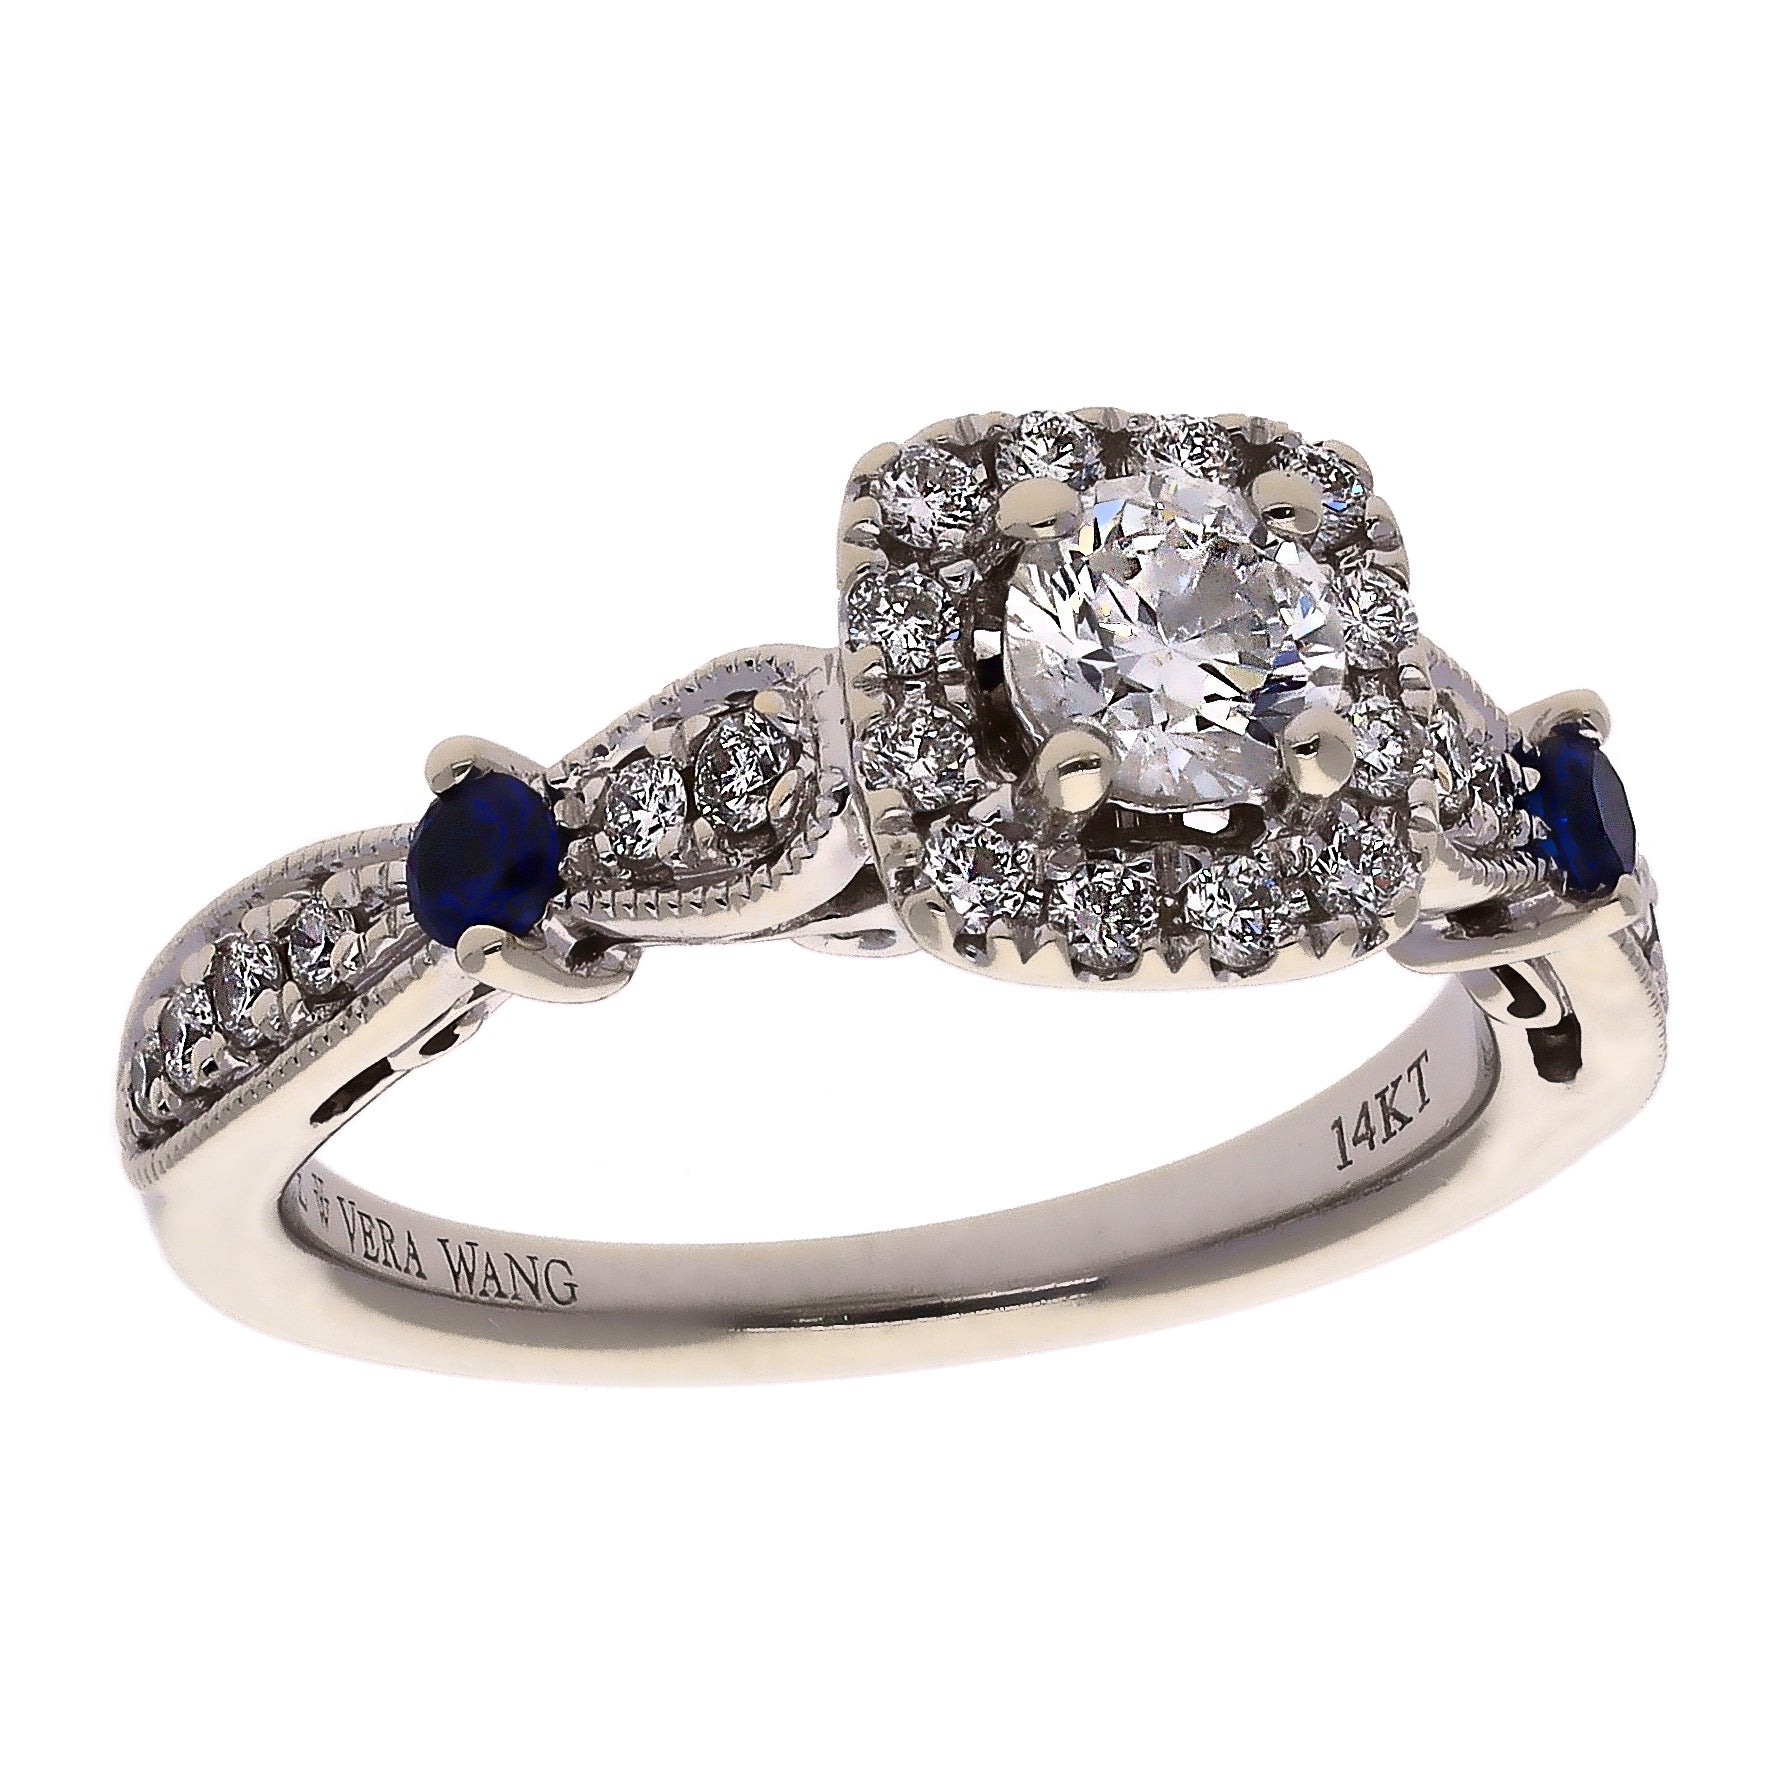 14K White Gold Vera Wang Diamond & Sapphire Engagement Ring